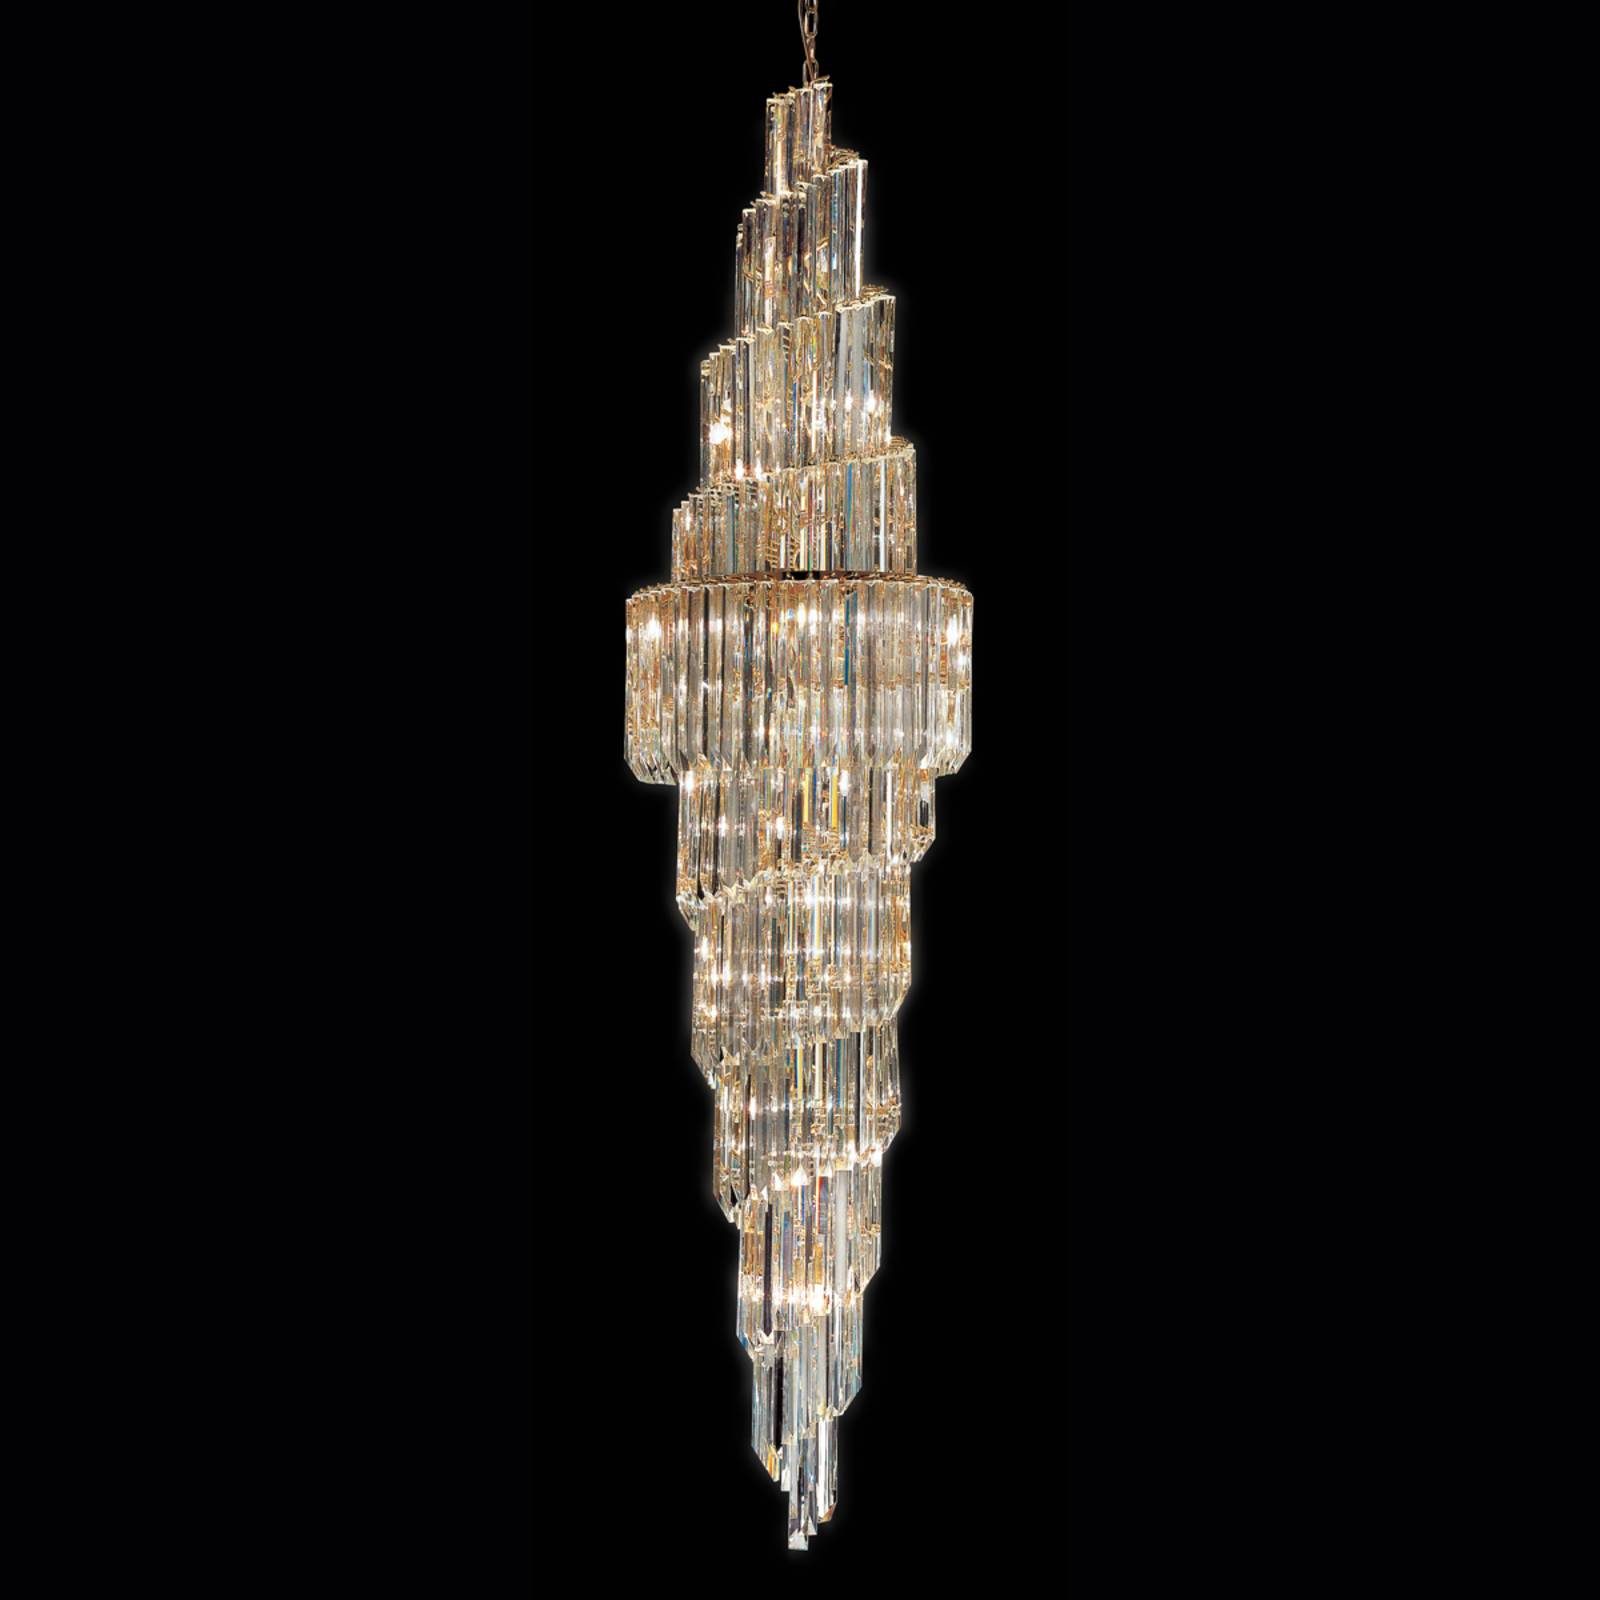 Függő lámpa Cristalli átlátszó, 245 cm magas